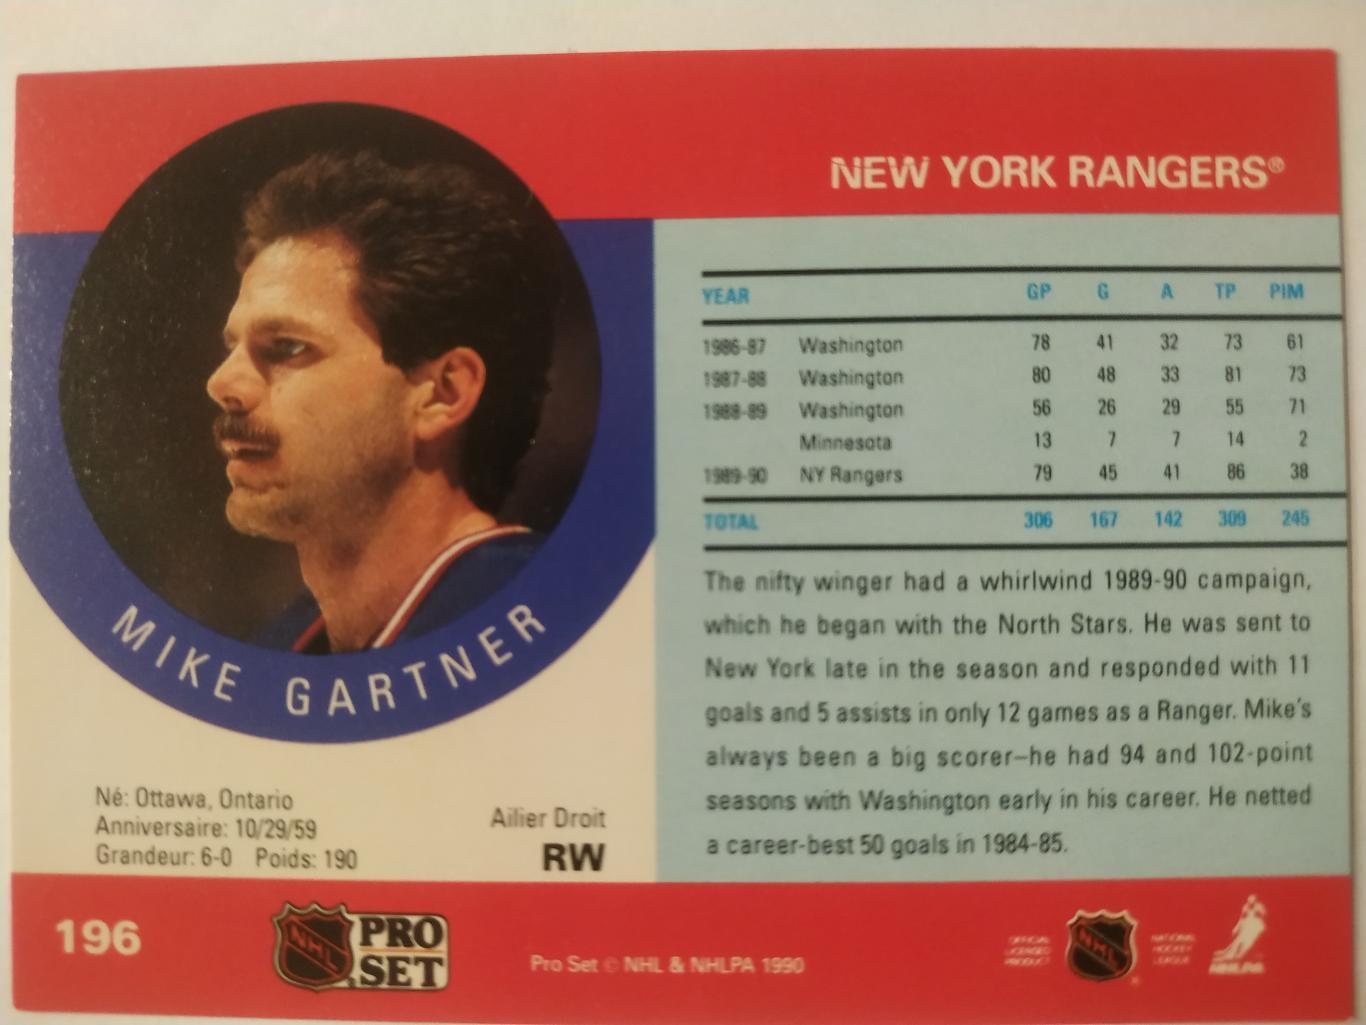 ХОККЕЙ КАРТОЧКА НХЛ PRO SET 1990 NHL MIKE GARTNER NEW YORK RANGERS #196 1